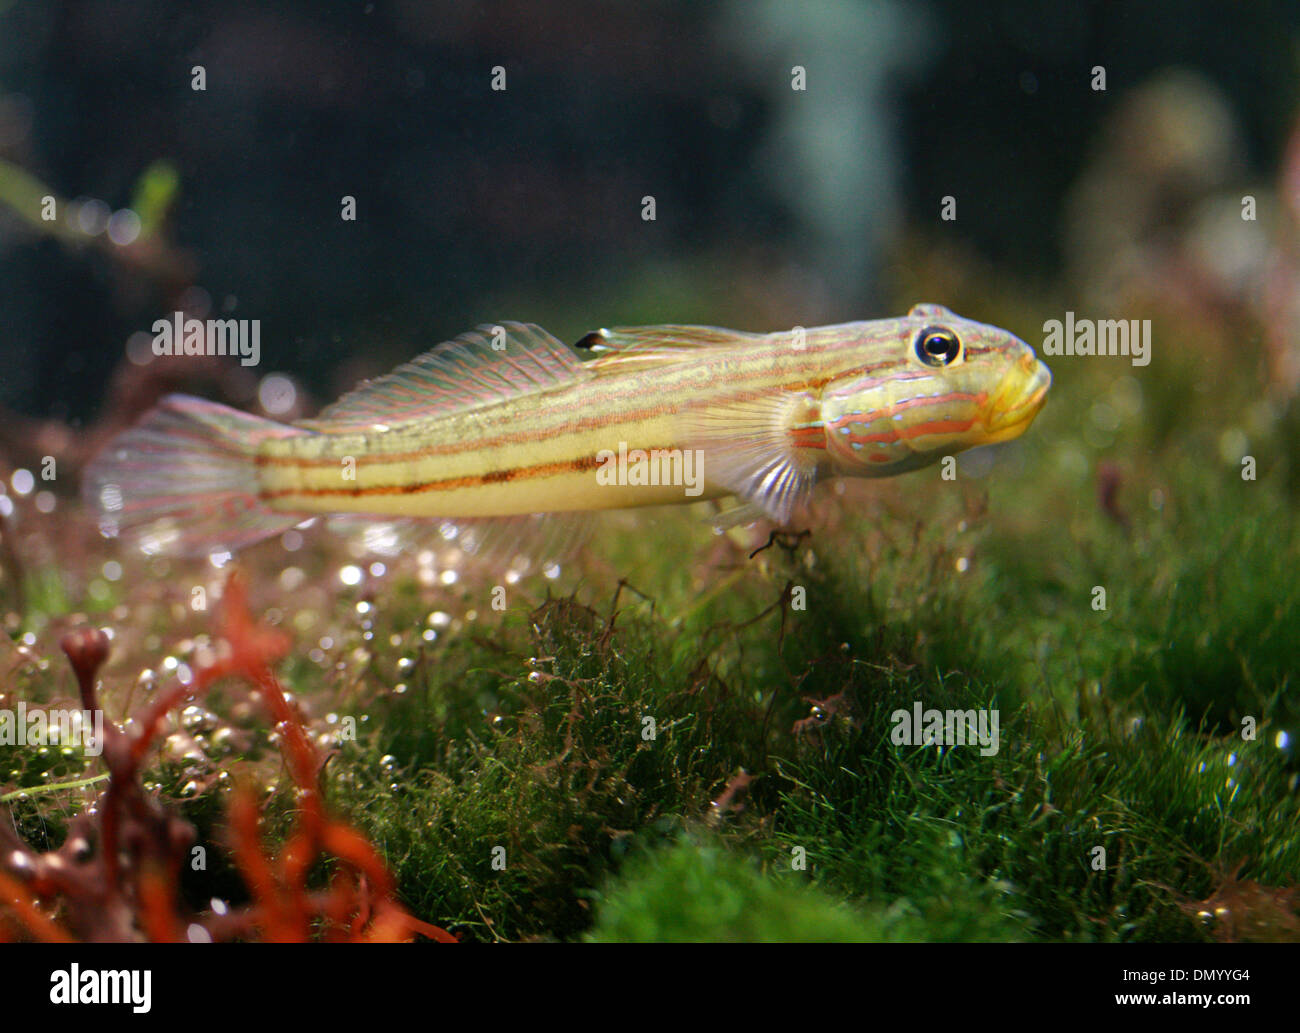 Goby Fish, Gobiinae, Gobiidae, Perciformes. Stock Photo